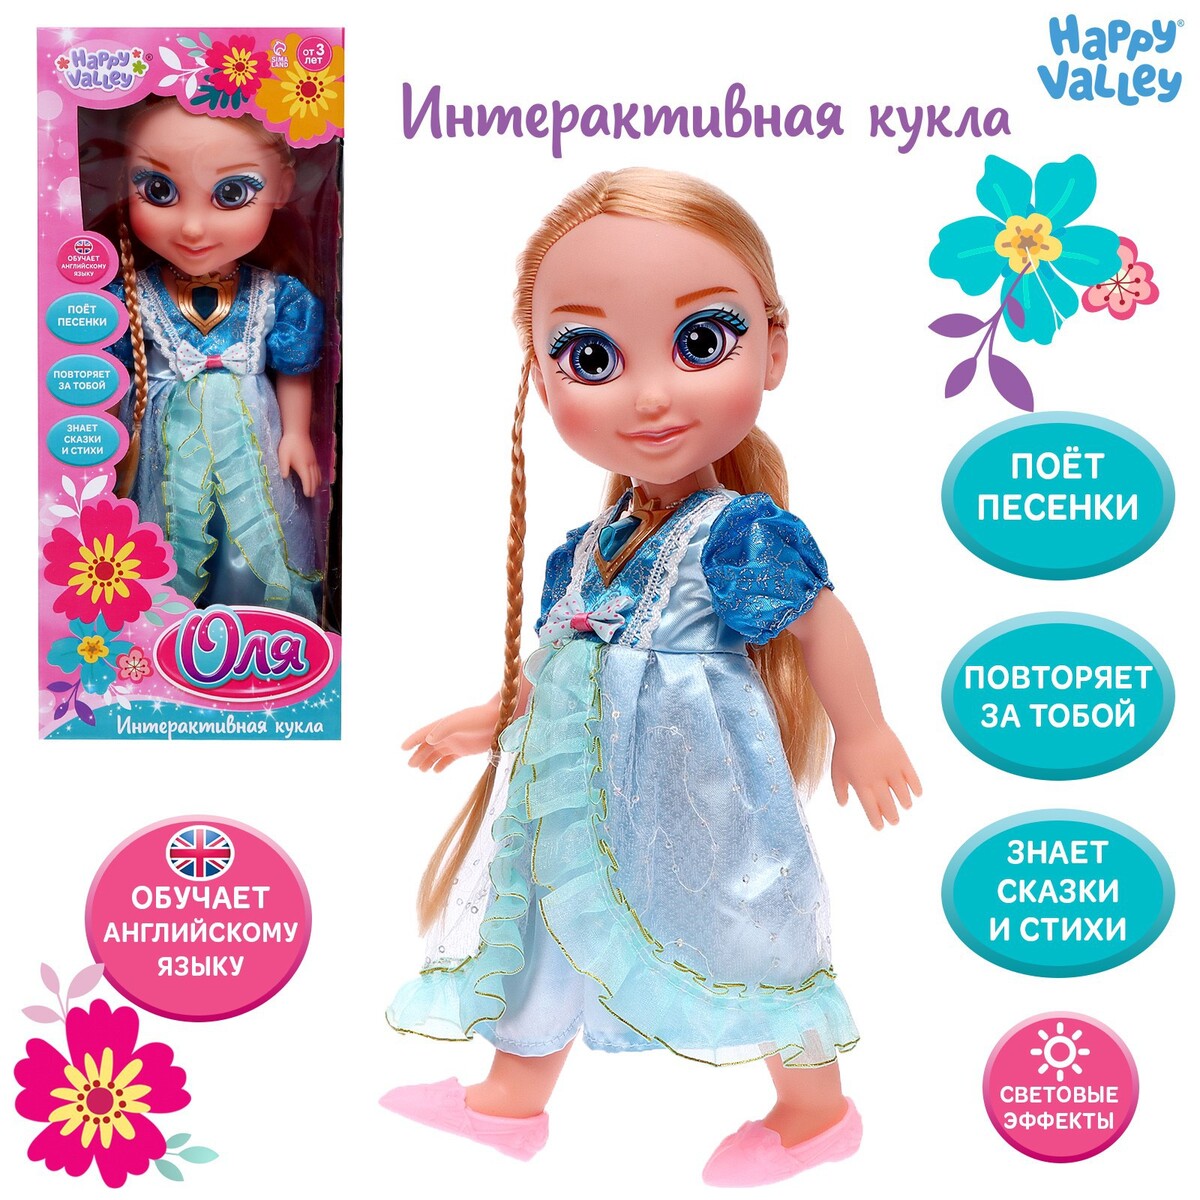 Кукла интерактивная кукла для девочек amore bello мягкая на батарейках говорит фразы 25 см jb0572061